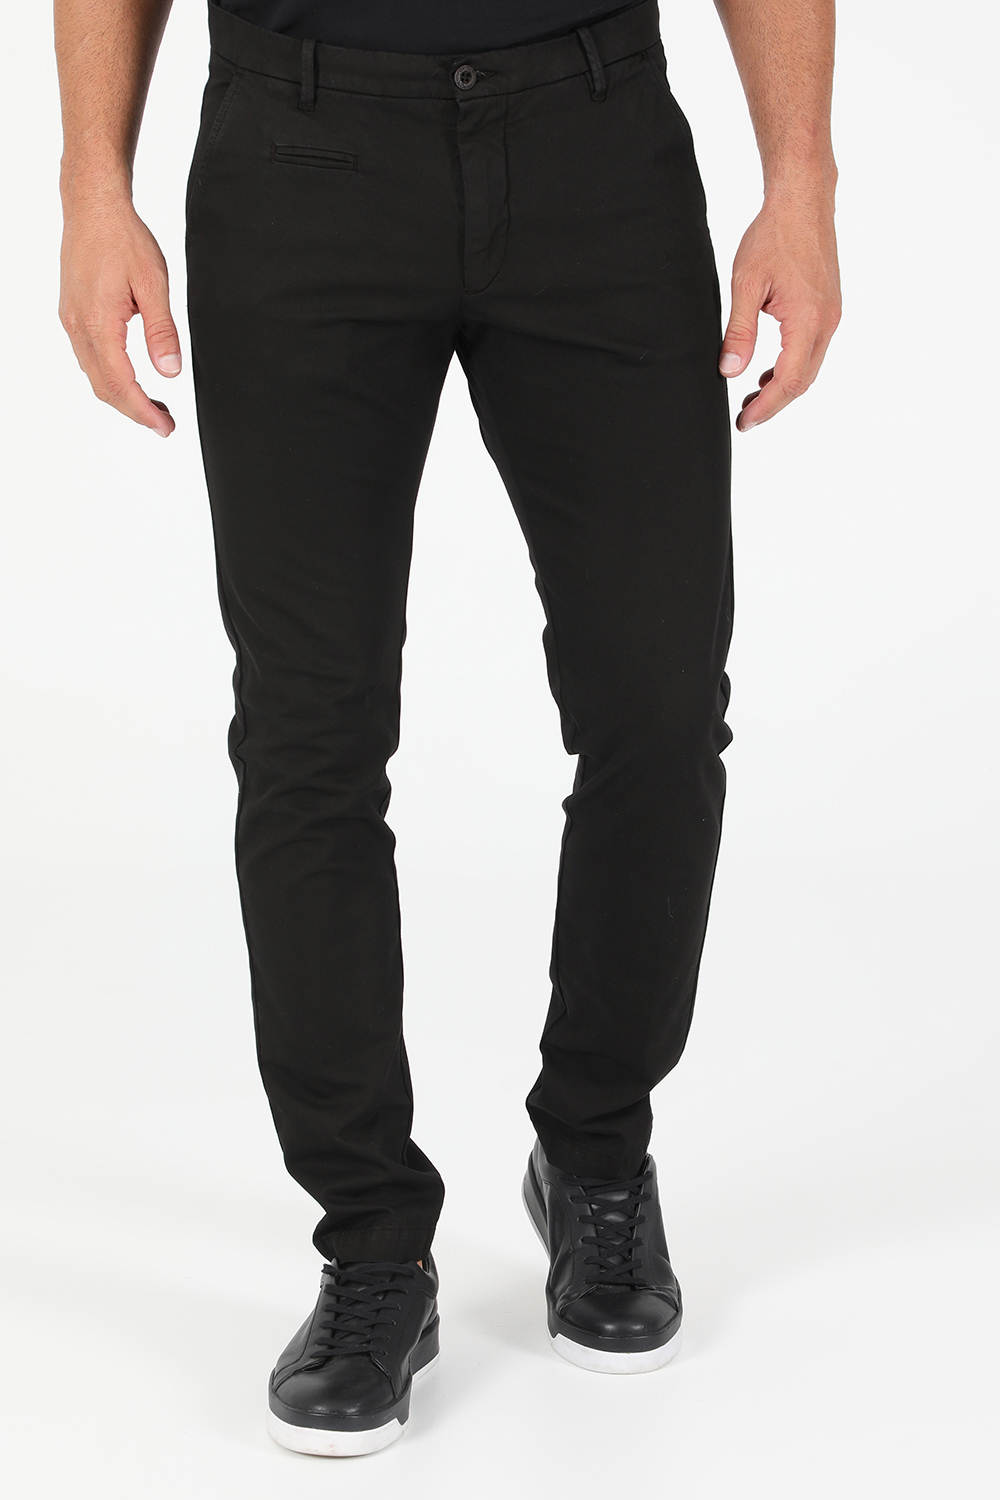 Ανδρικά/Ρούχα/Παντελόνια/Chinos UNIFORM - Ανδρικό chino παντελόνι UNIFORM CHARLIE μαύρο